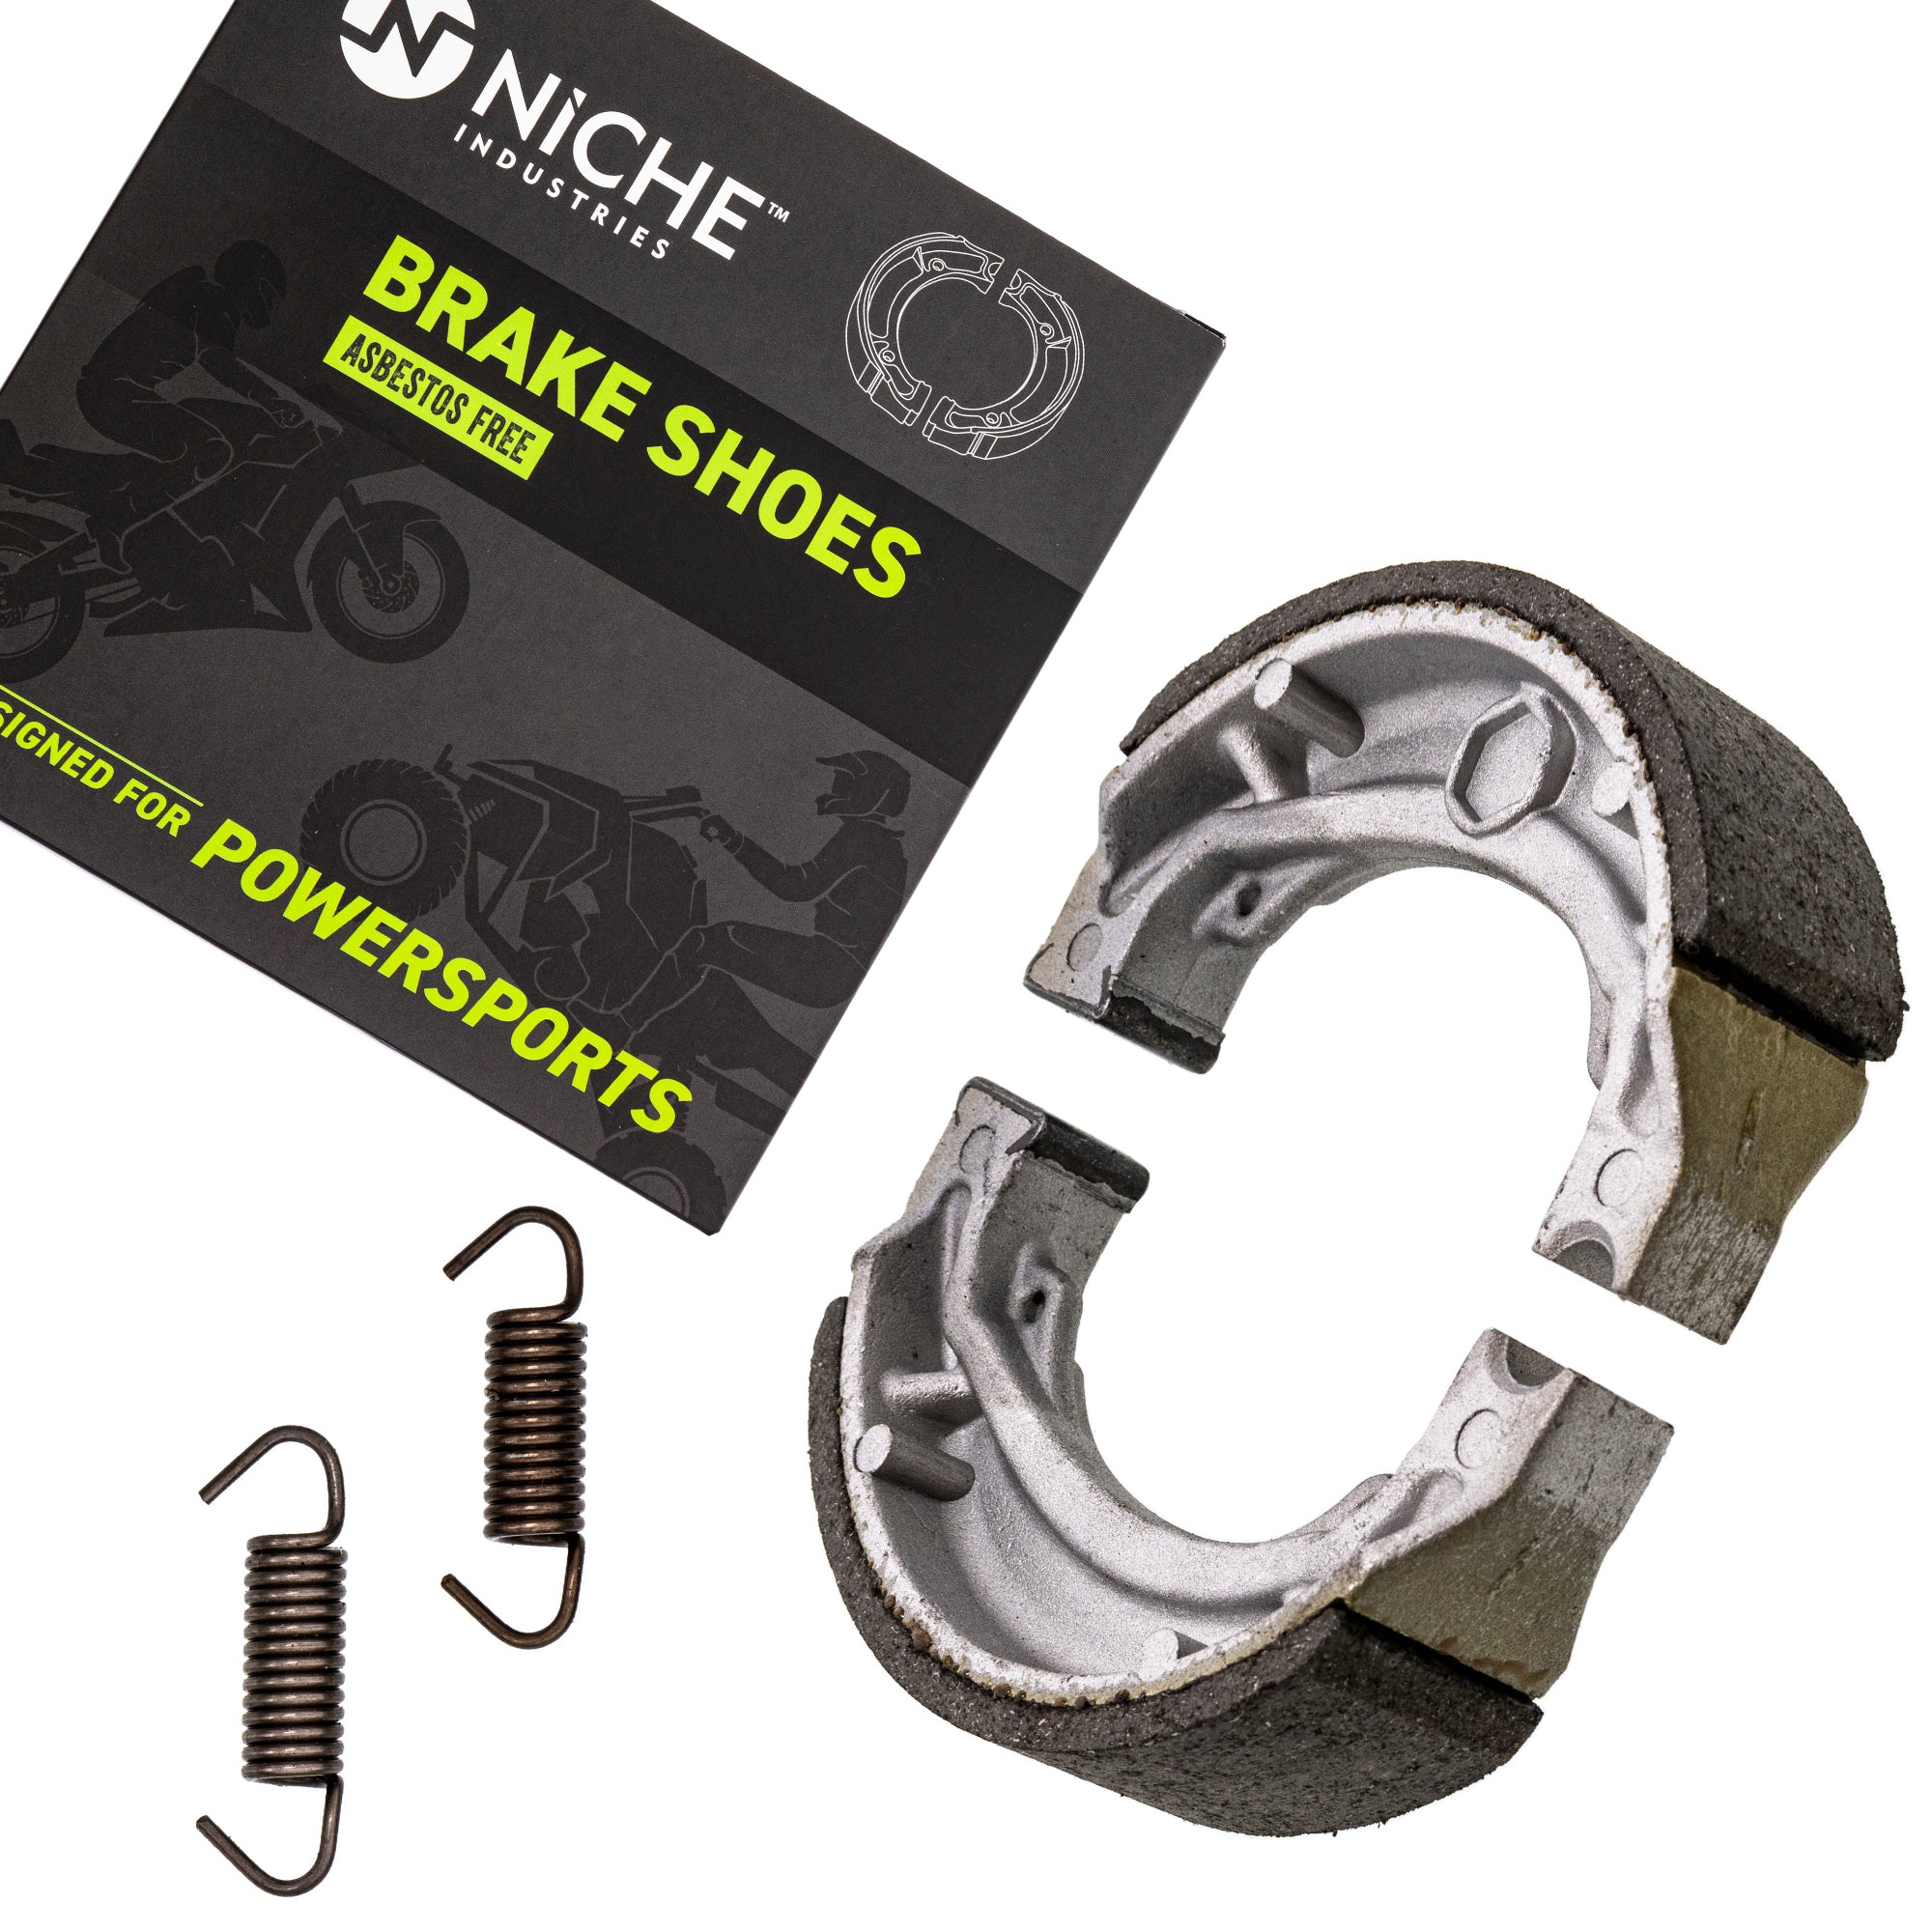 Rear Brake Shoe for Suzuki Quadsport 54401-43840 NICHE 519-KBR2242S